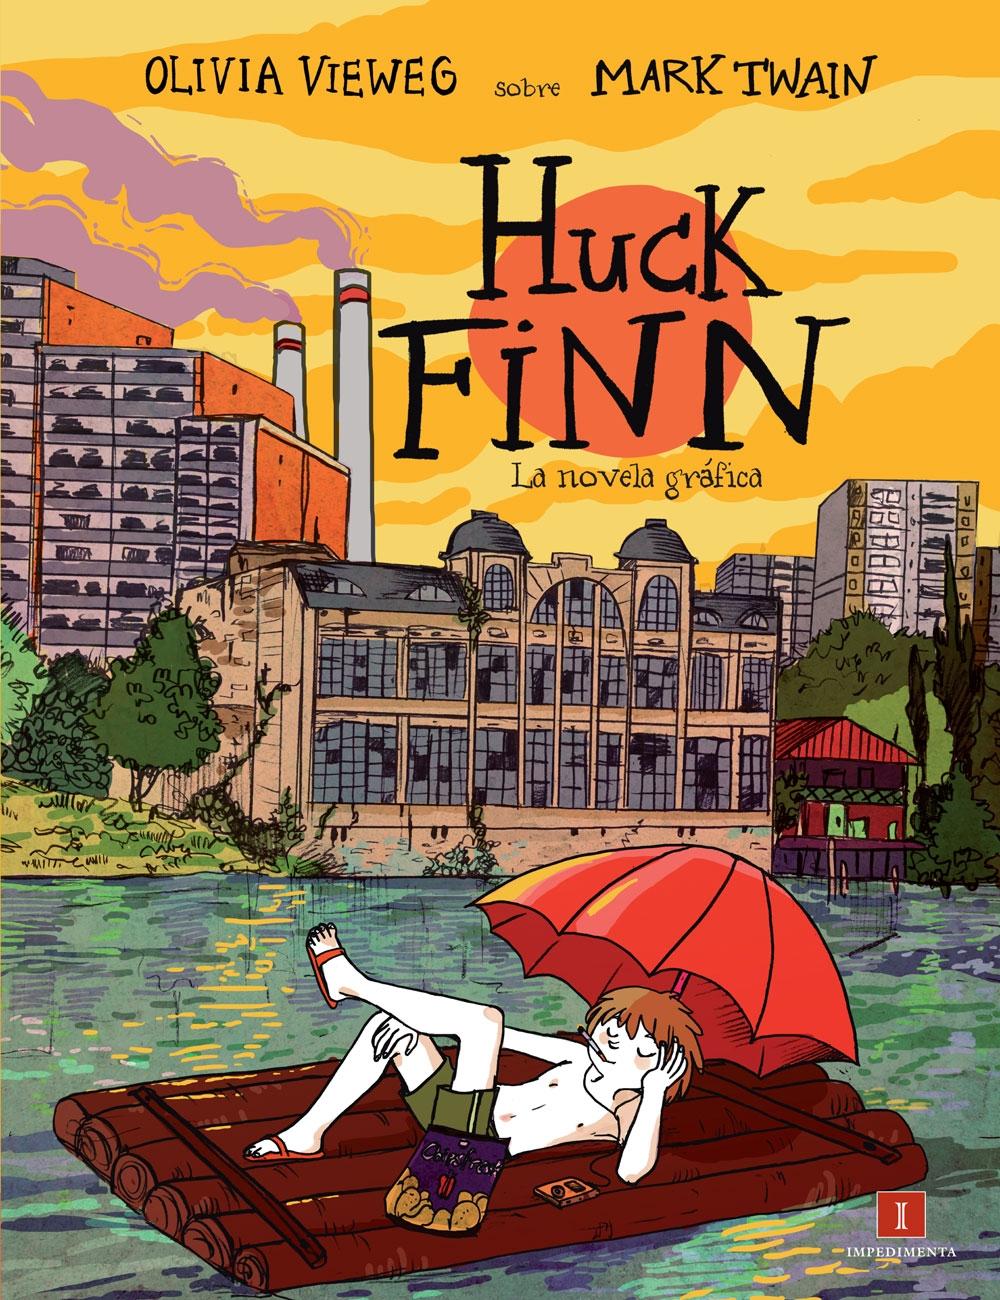 Huck Finn "La Novela Gráfica"